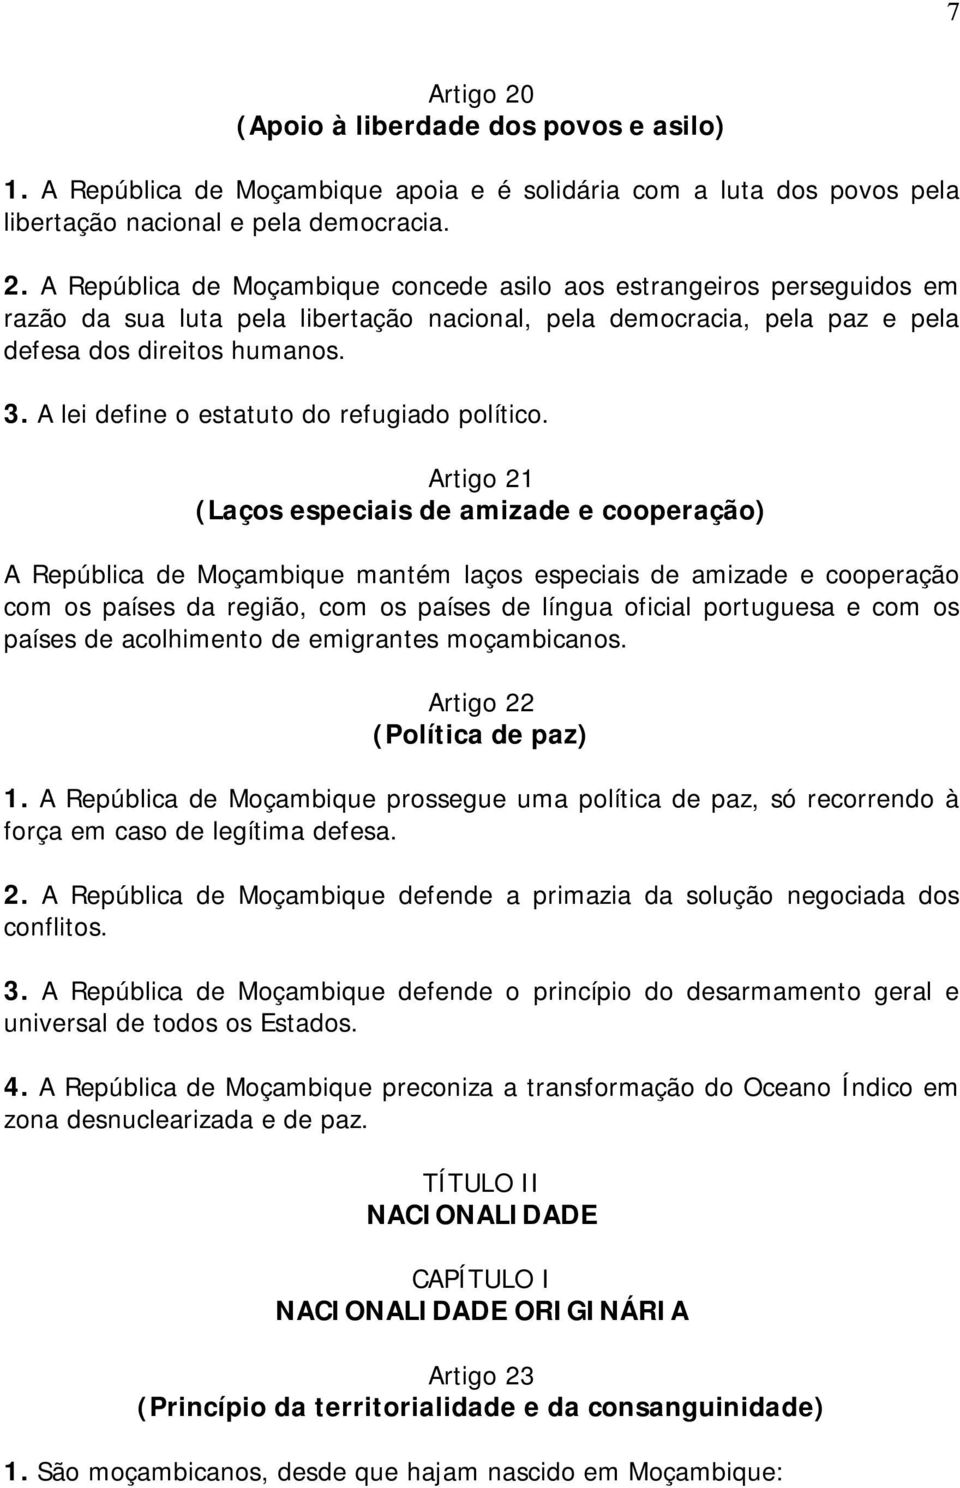 Artigo 21 (Laços especiais de amizade e cooperação) A República de Moçambique mantém laços especiais de amizade e cooperação com os países da região, com os países de língua oficial portuguesa e com